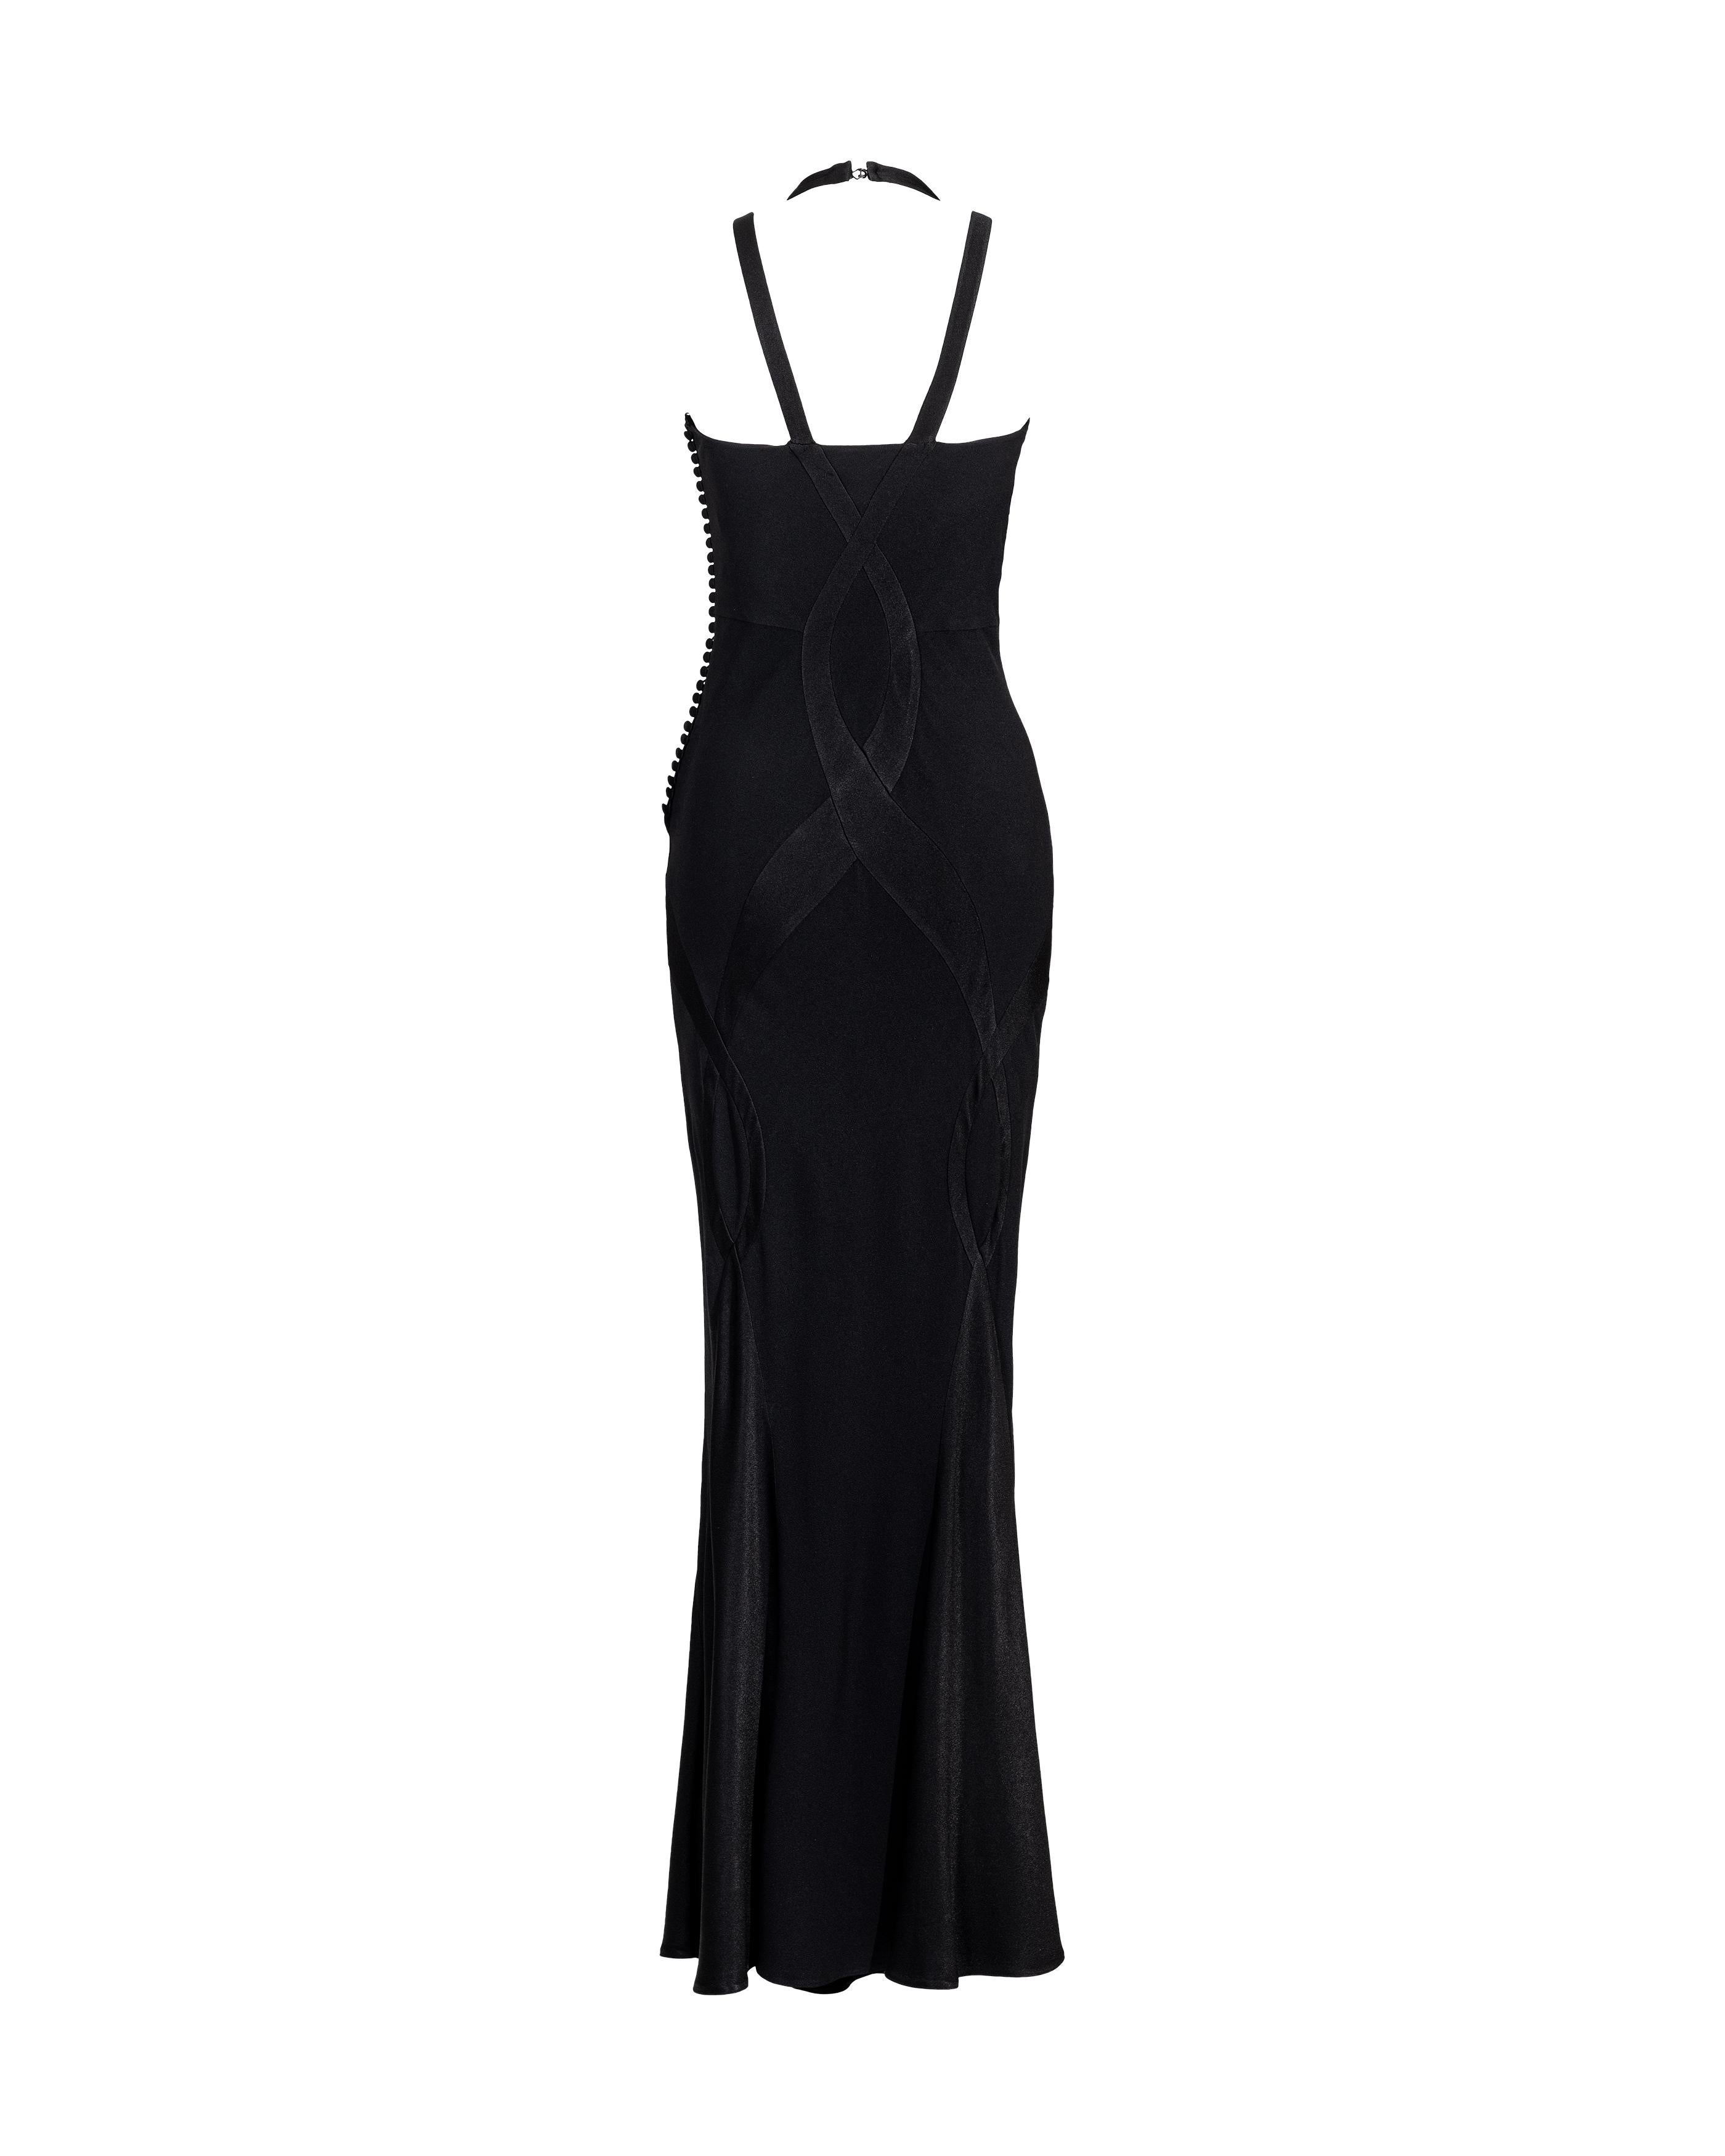 A/W 2004 Christian Dior Cutout Black Silk Gown 1